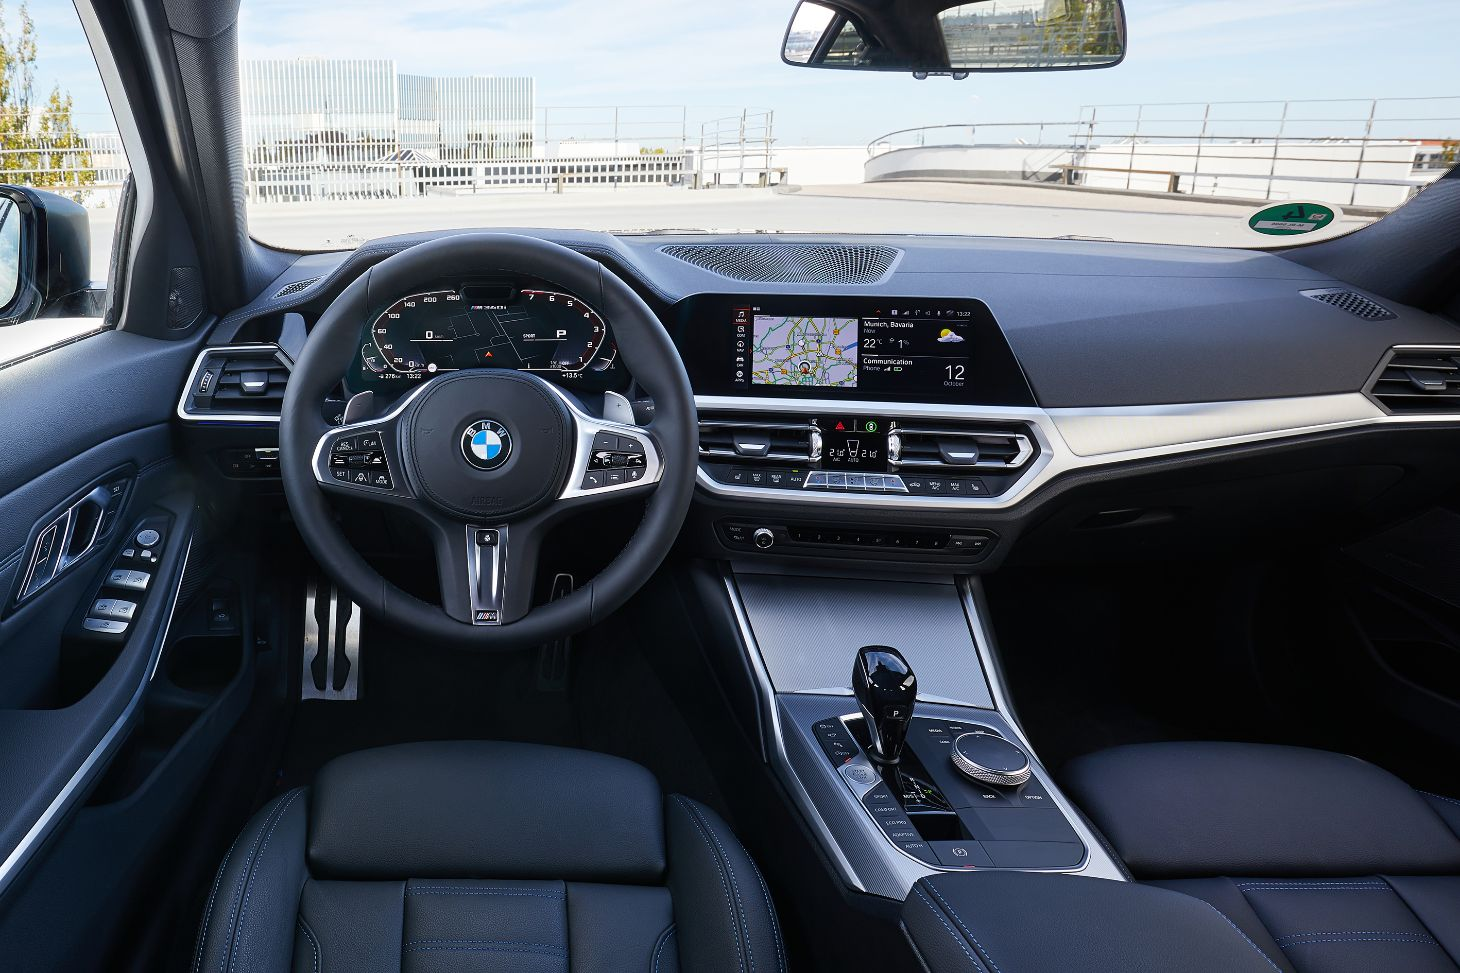 BMW 320i interior